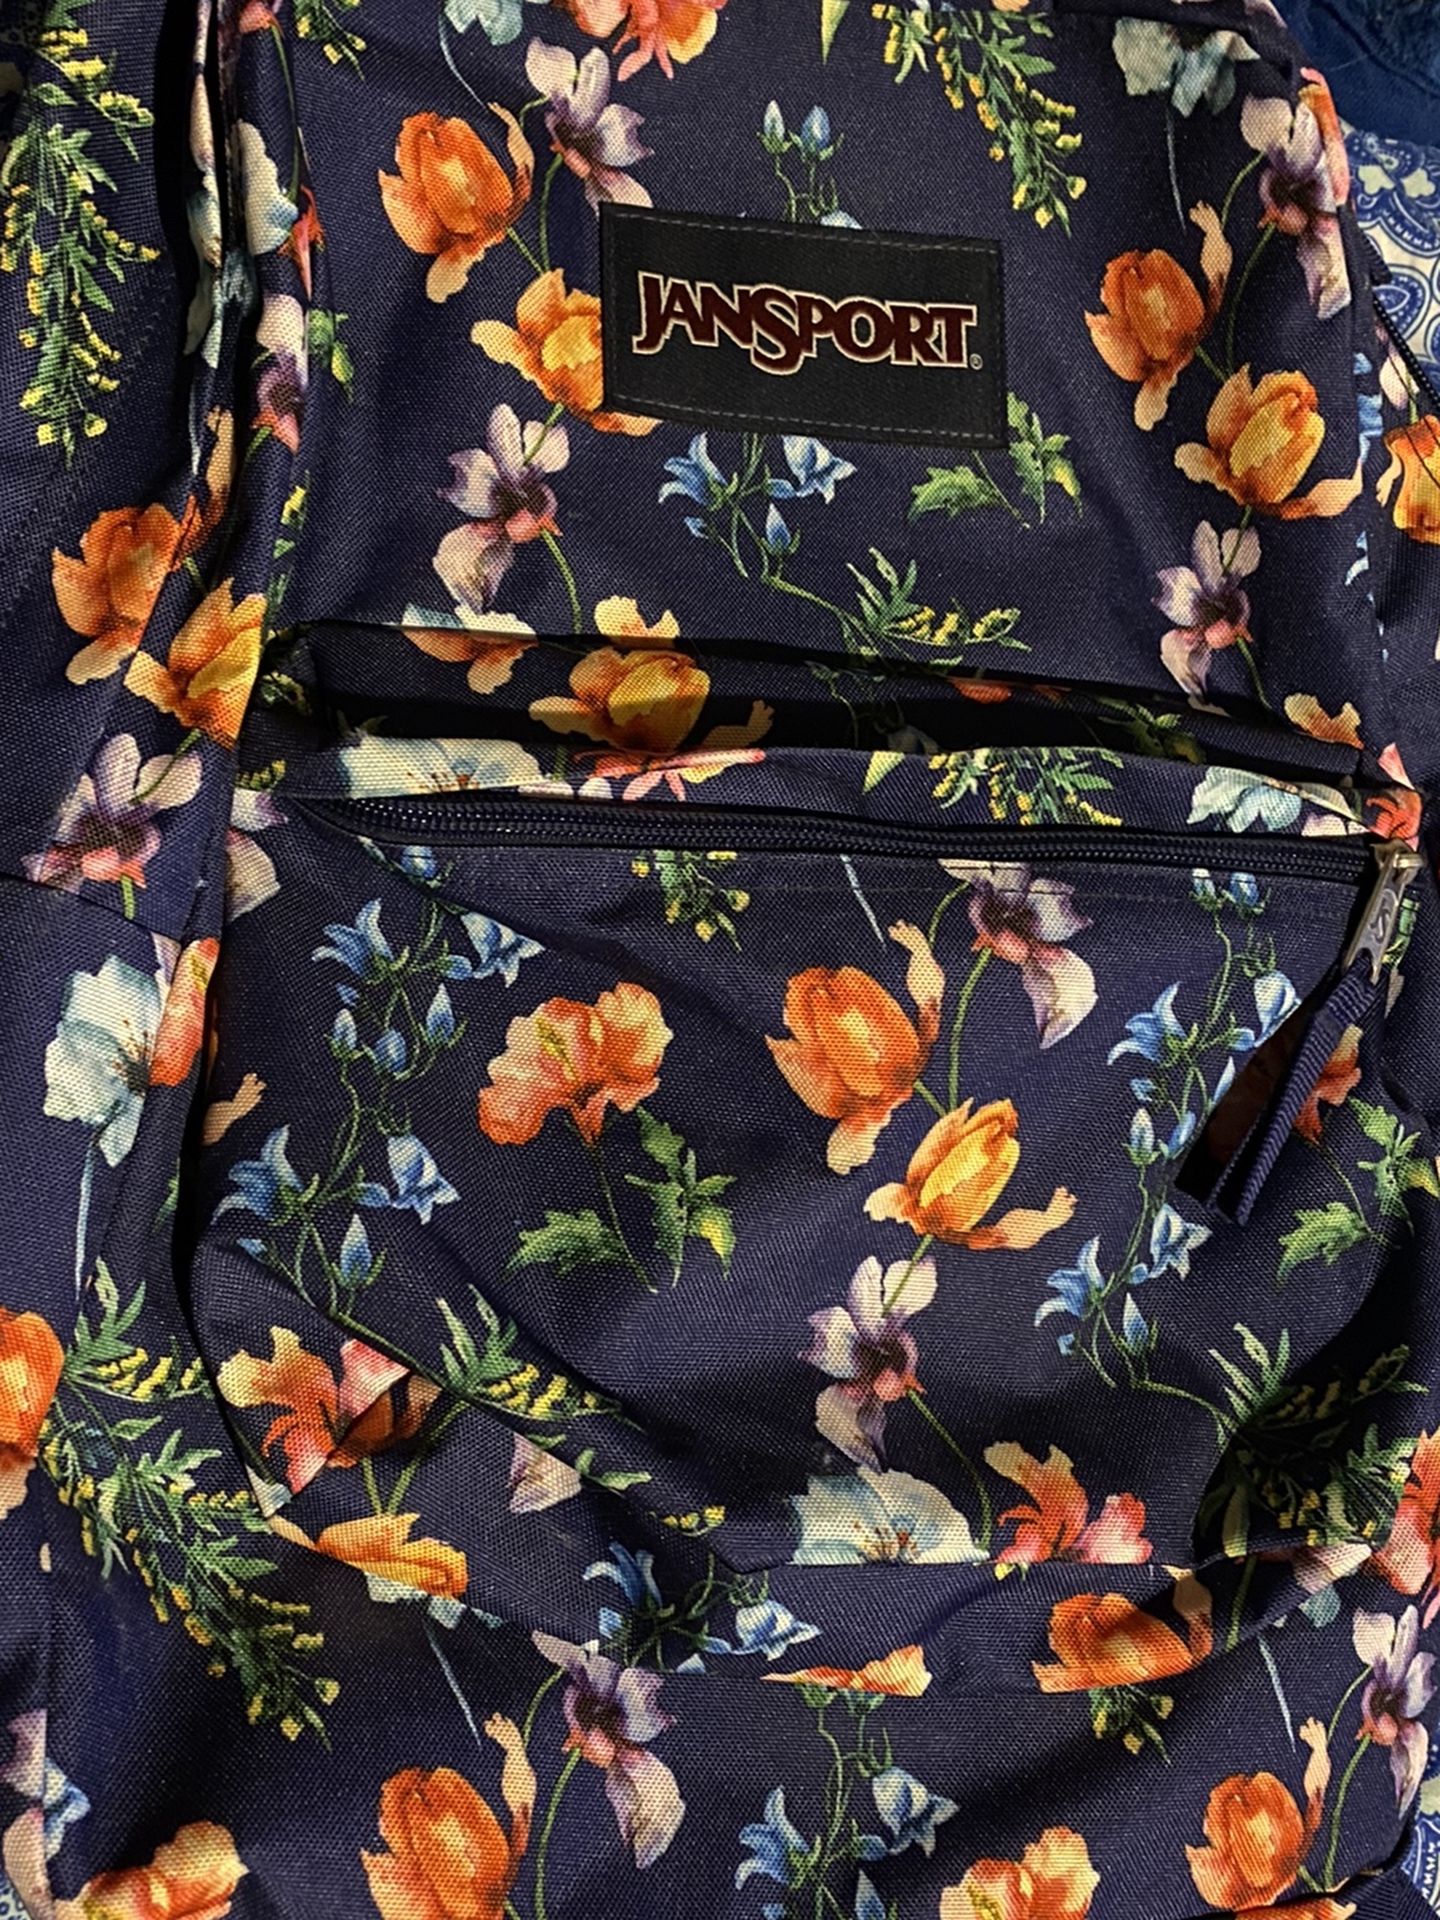 Regular size Jan sport backpack